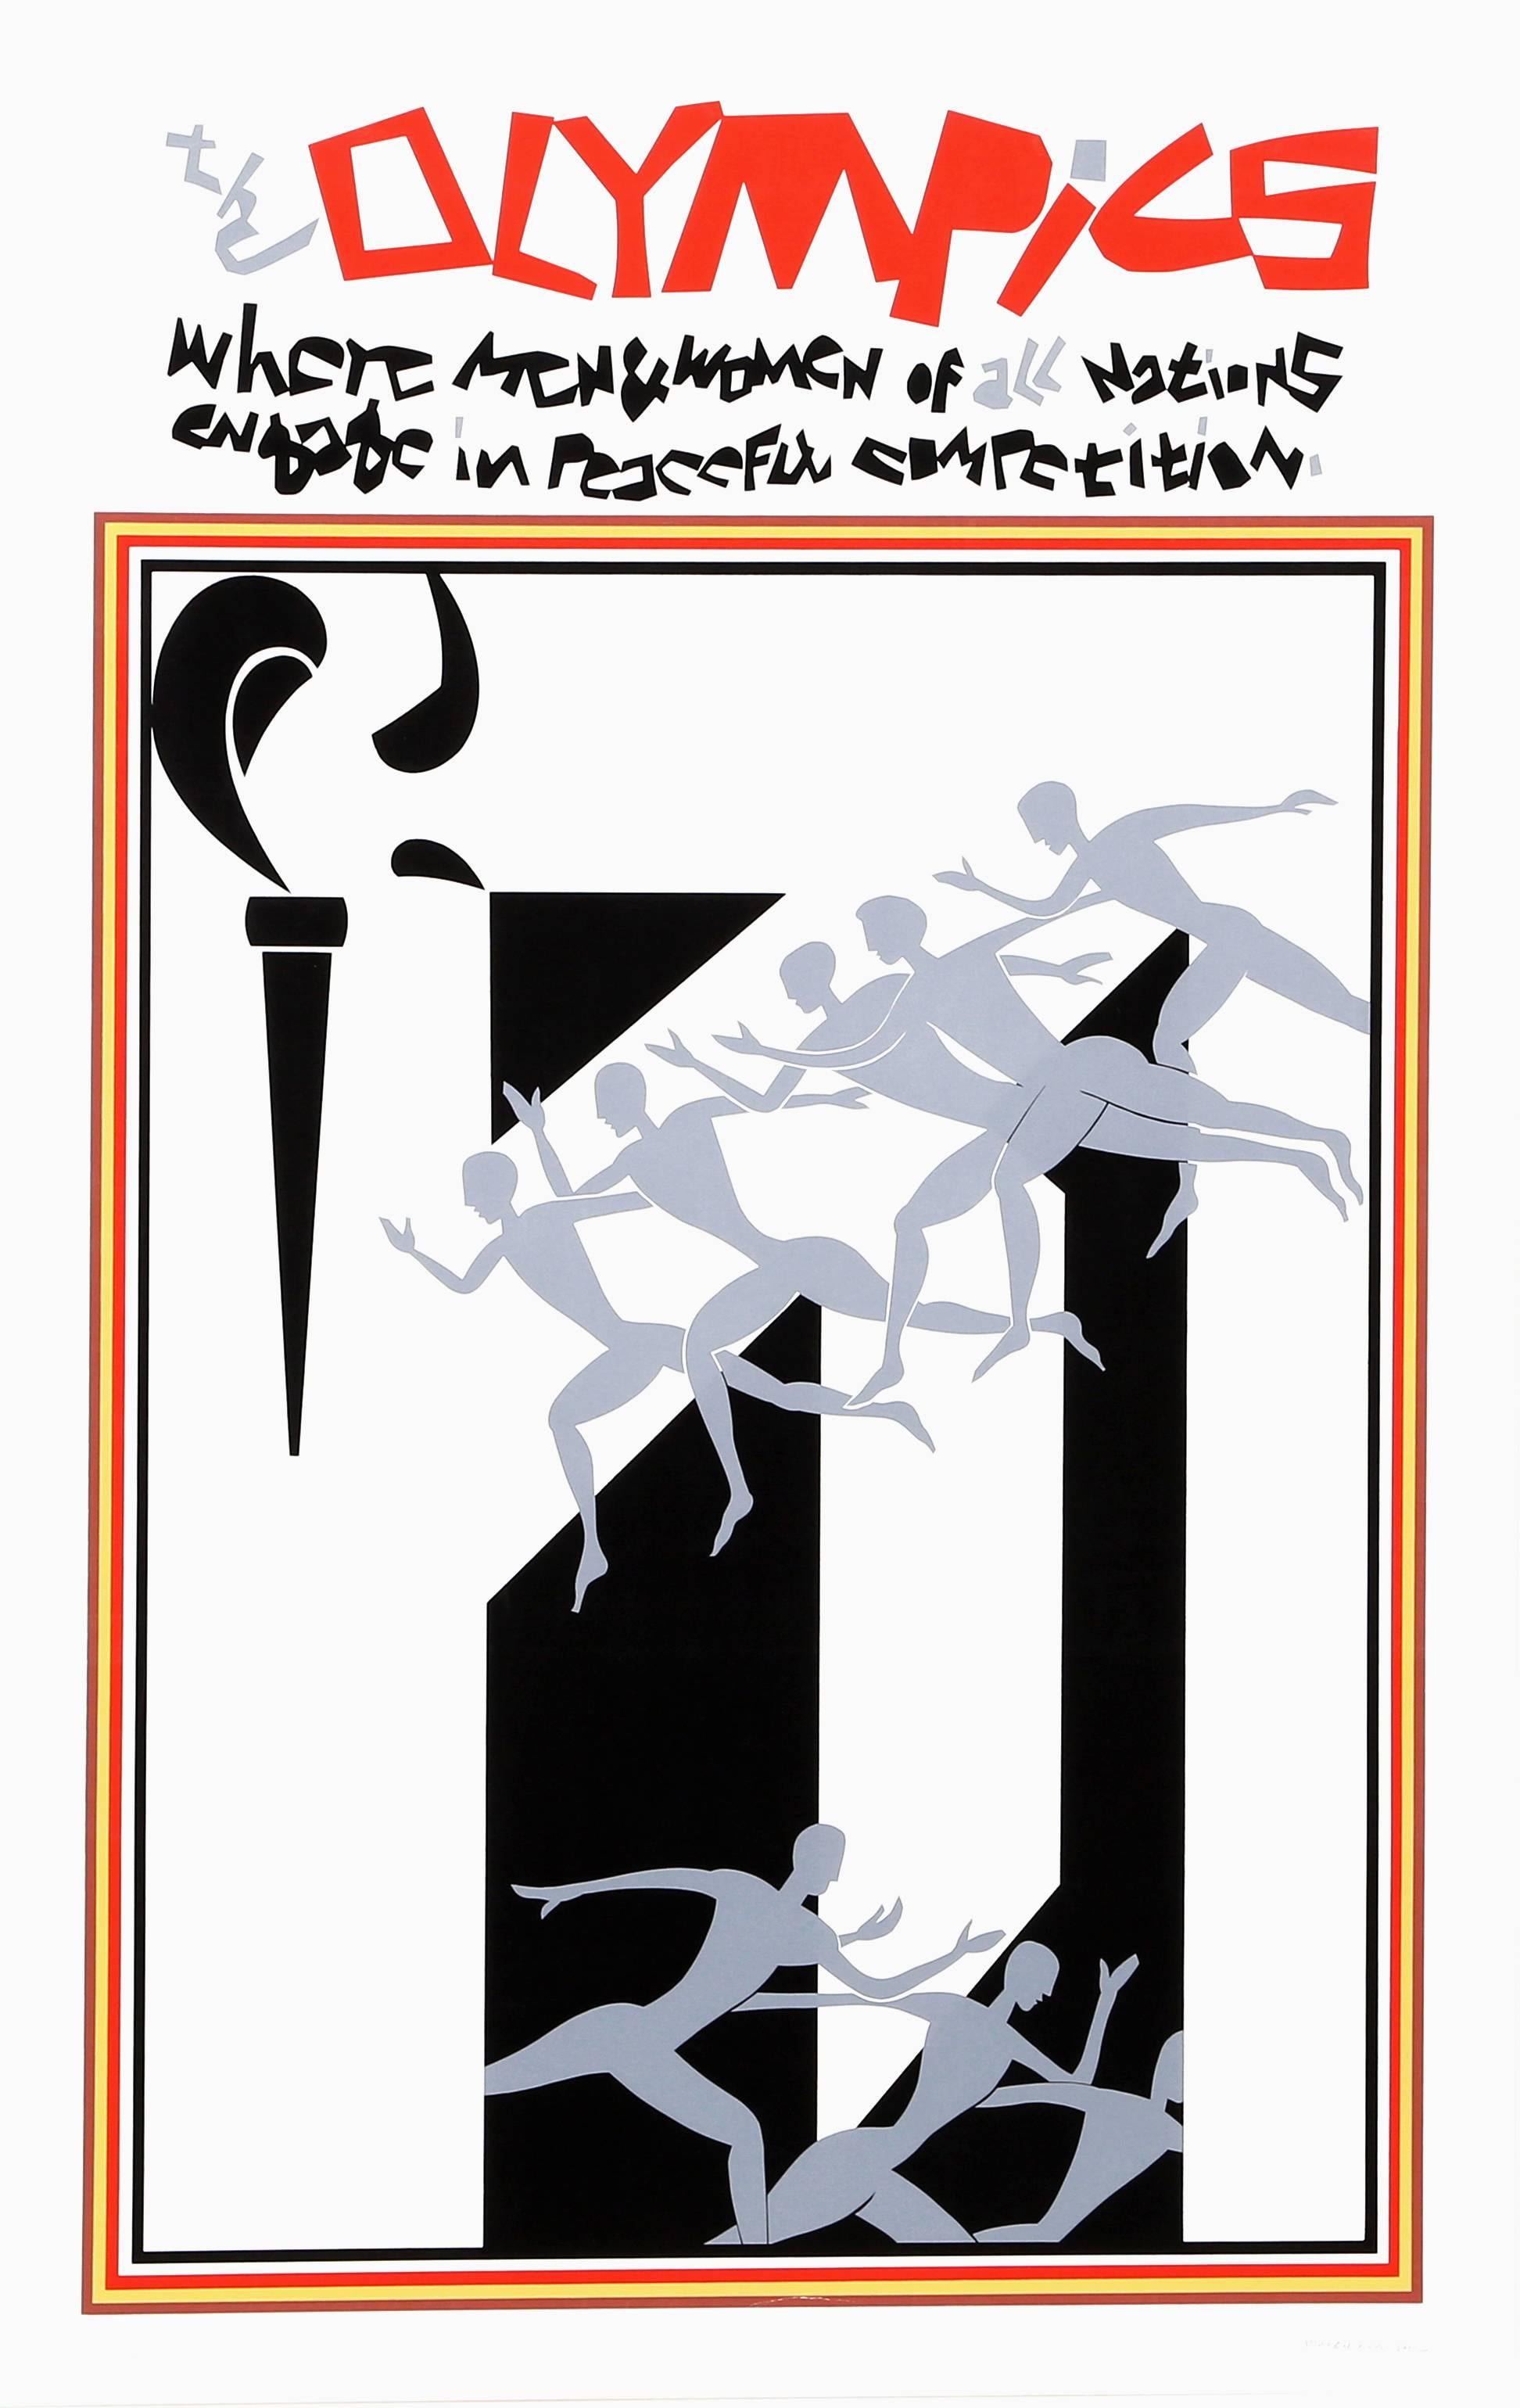 Artiste : Romare Bearden, américain (1911 - 1988)
Titre : Les Olympiades
Année : 1976
Support : Sérigraphie sur BFK Rives, signée et numérotée au crayon
Edition : 200
Format du papier : 40 x 25 pouces (101,6 x 63,5 cm)

Éditeur : Kennedy Graphics,